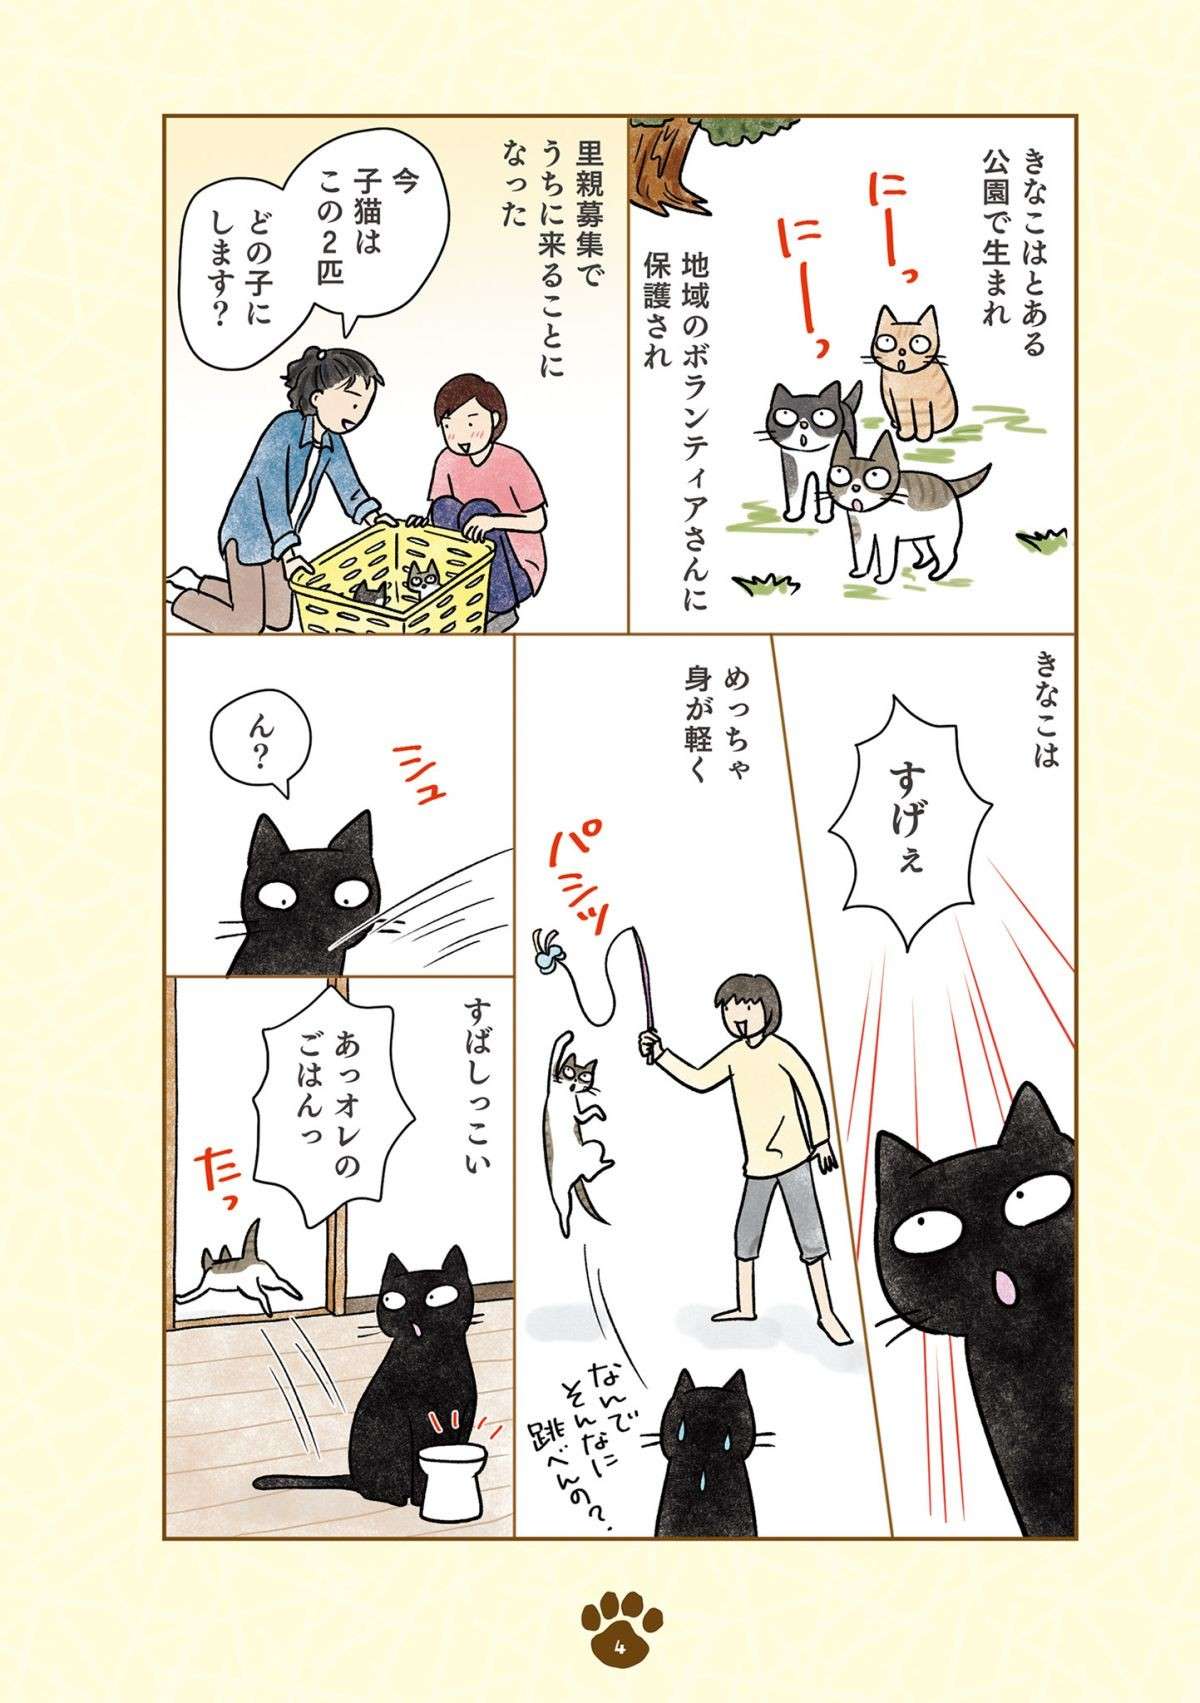 「え、猫やのに？」猫らしくない黒猫。新入りキジシロ猫との関係は？／黒猫ナノとキジシロ猫きなこ kuroneko_nano1-4.jpg